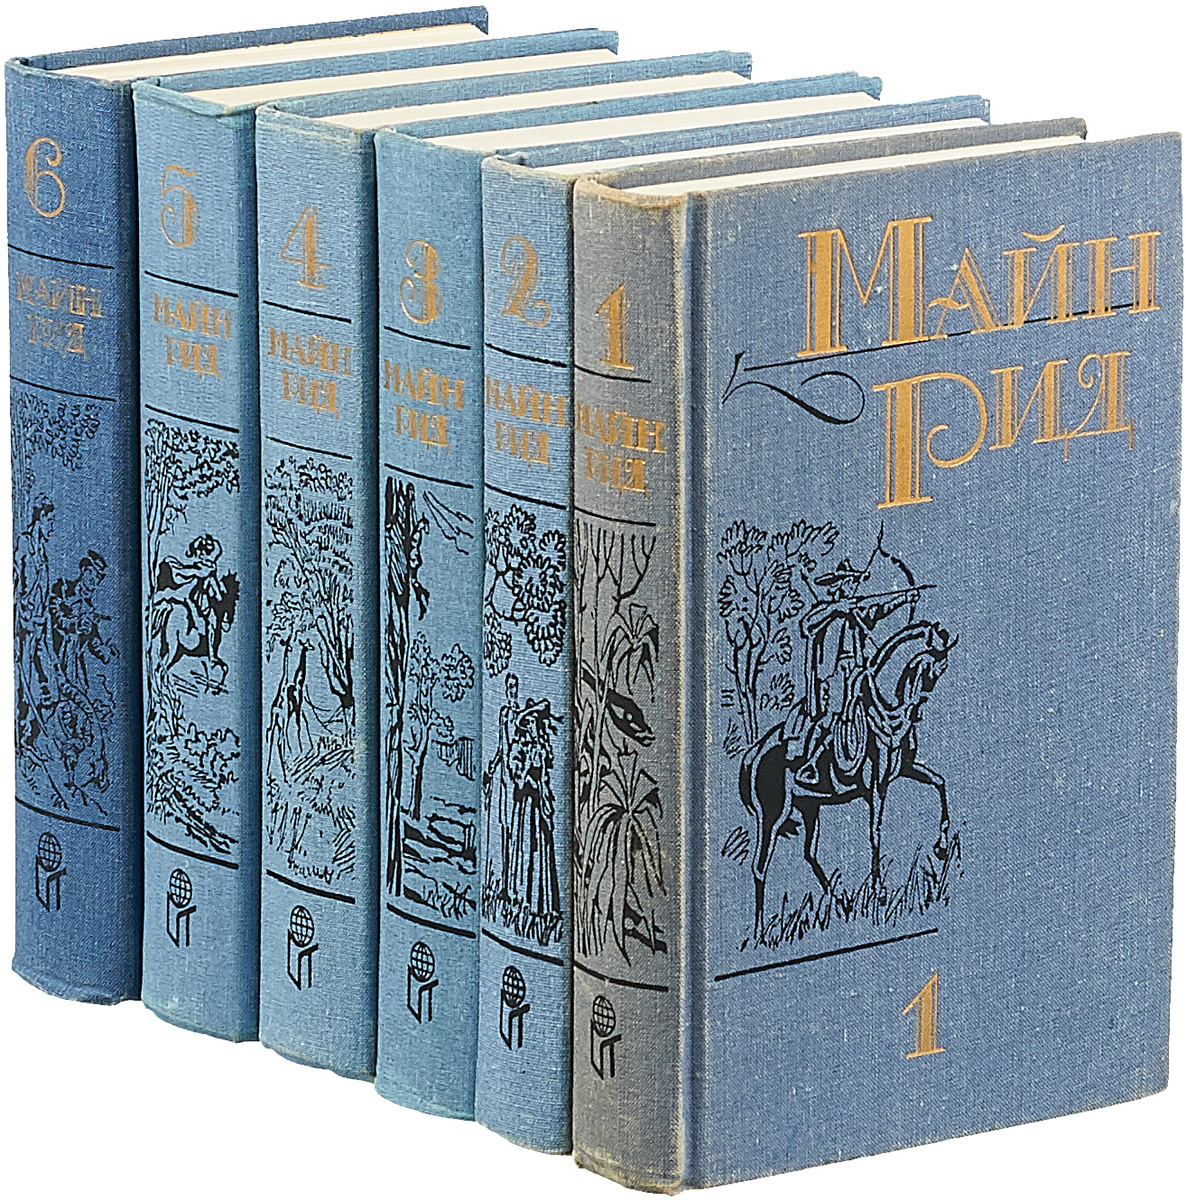 Майн Рид. Собрание сочинений в 6 томах (комплект из 6 книг)  #1